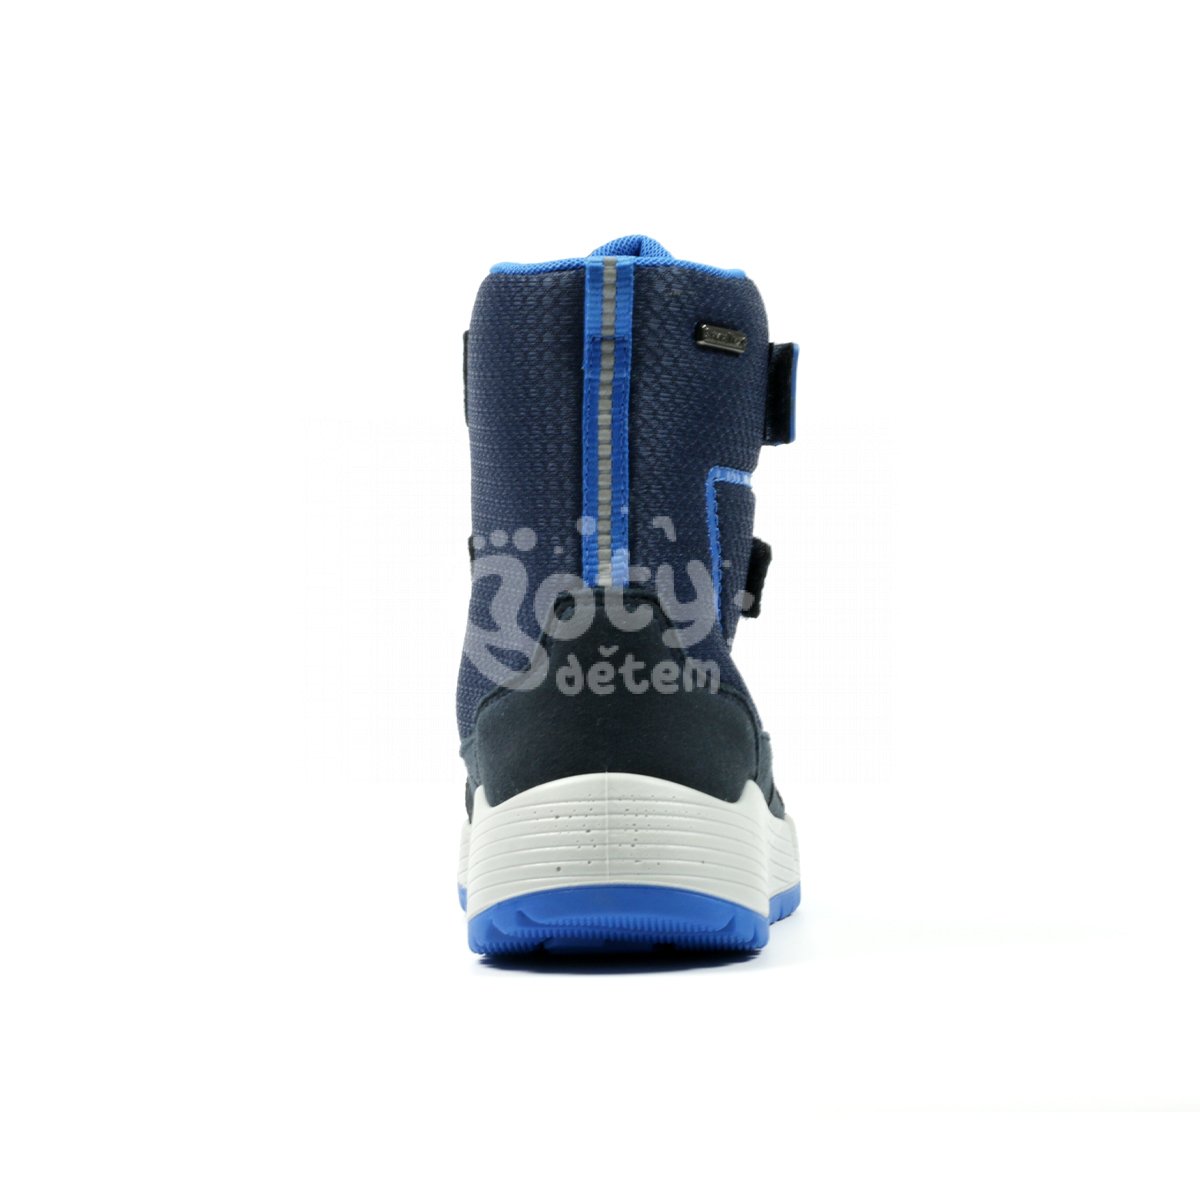 Zimní obuv RS-1 Richter 6355-4191-7200 modrá